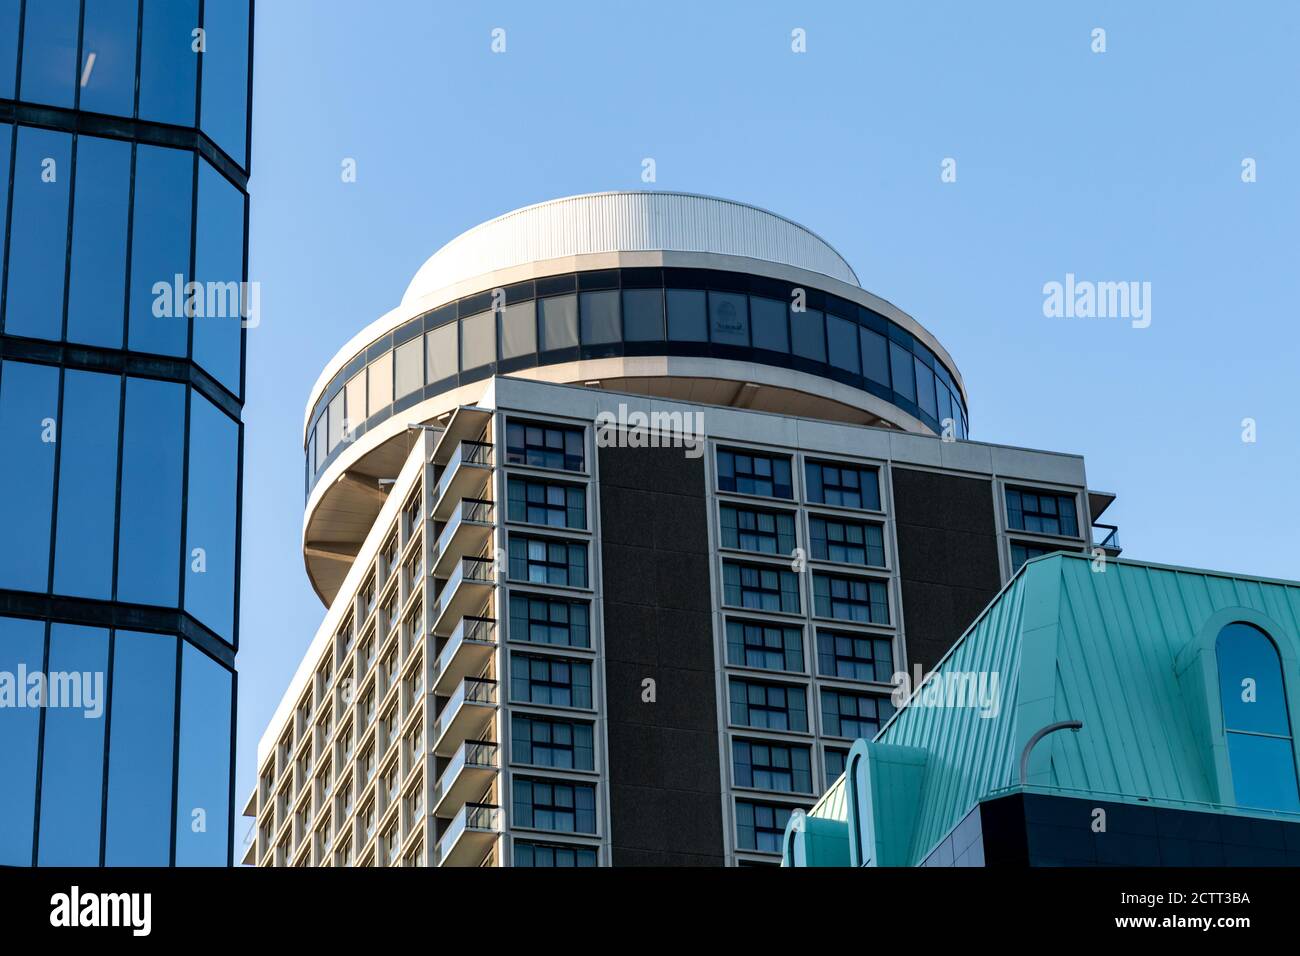 L'Ottawa Marriot Hotel al 100 di Kent Street nel centro della capitale del Canada è visto dal basso, mostrando lo spazio per eventi rotante Summit. Foto Stock